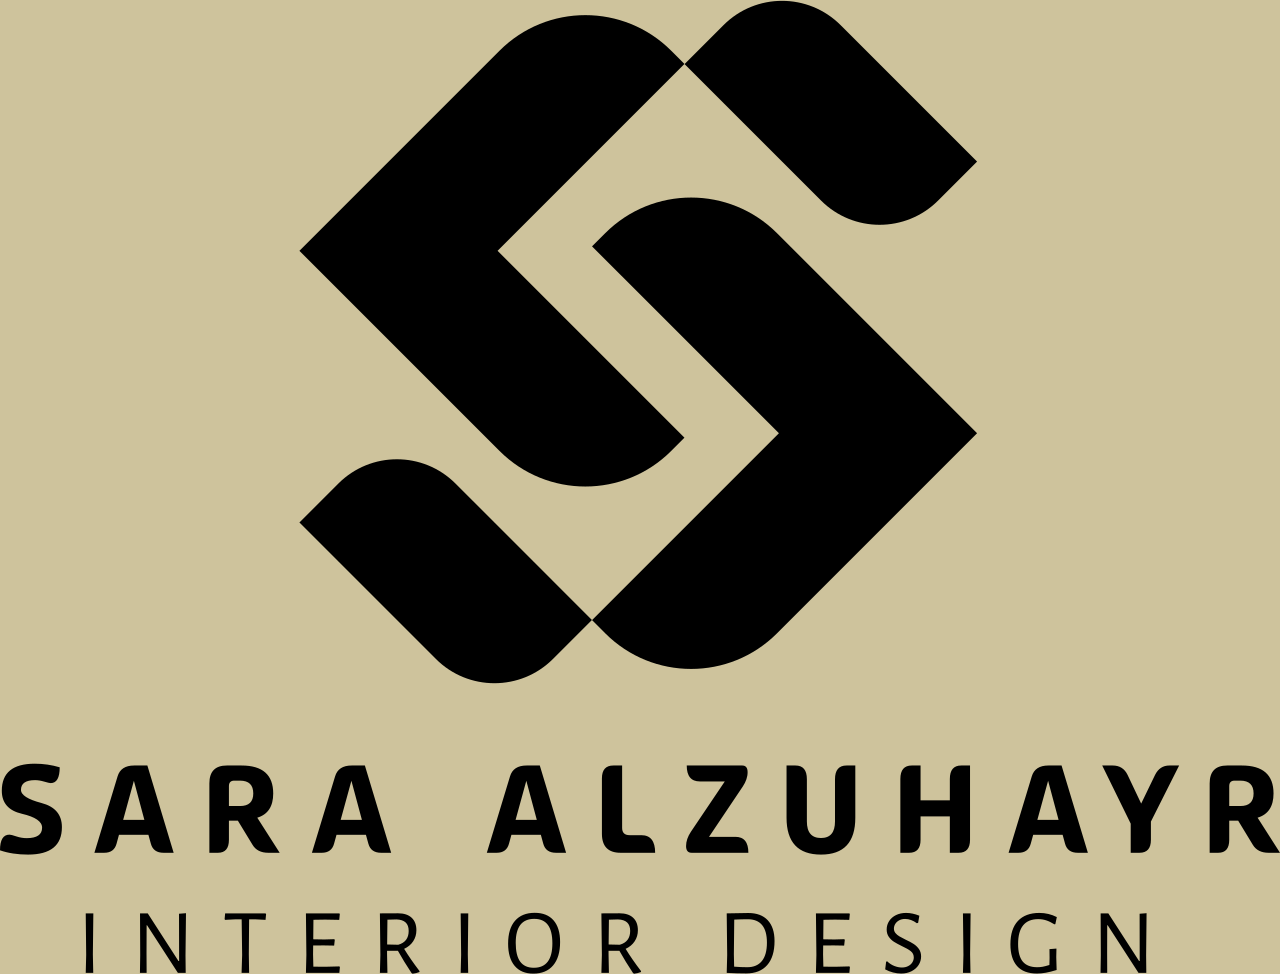 Sara Alzuhayr's logo